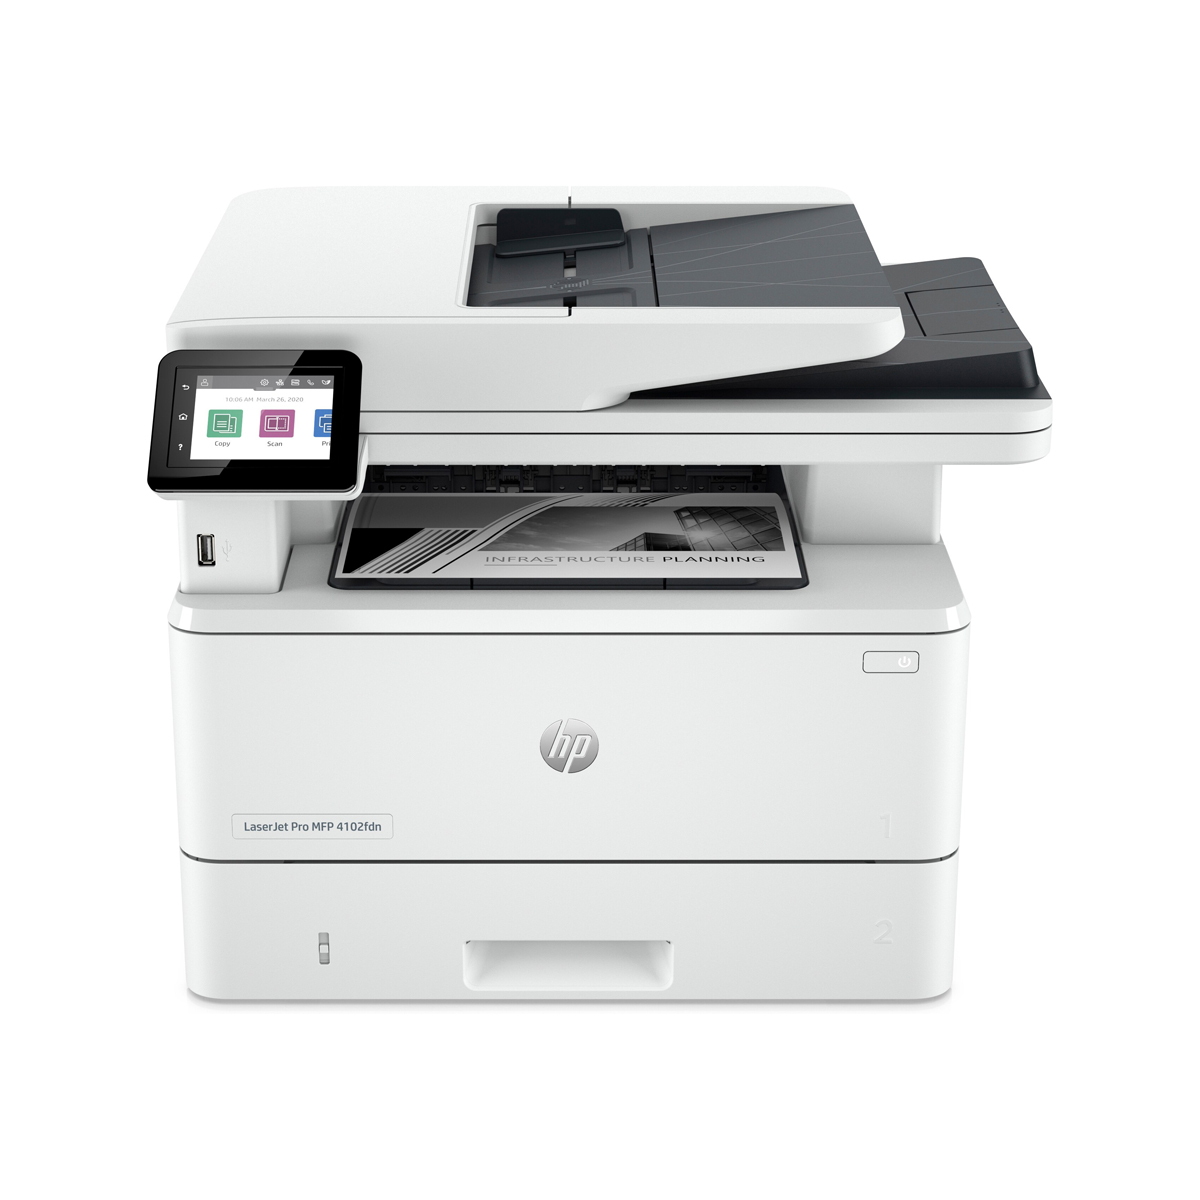 HP LaserJet Pro MFP 4102fdn - 4in1 Multifunktionsdrucker Schwarz-Weiß, Drucken, Kopieren, Scannen, Faxen, Instant Ink von HP